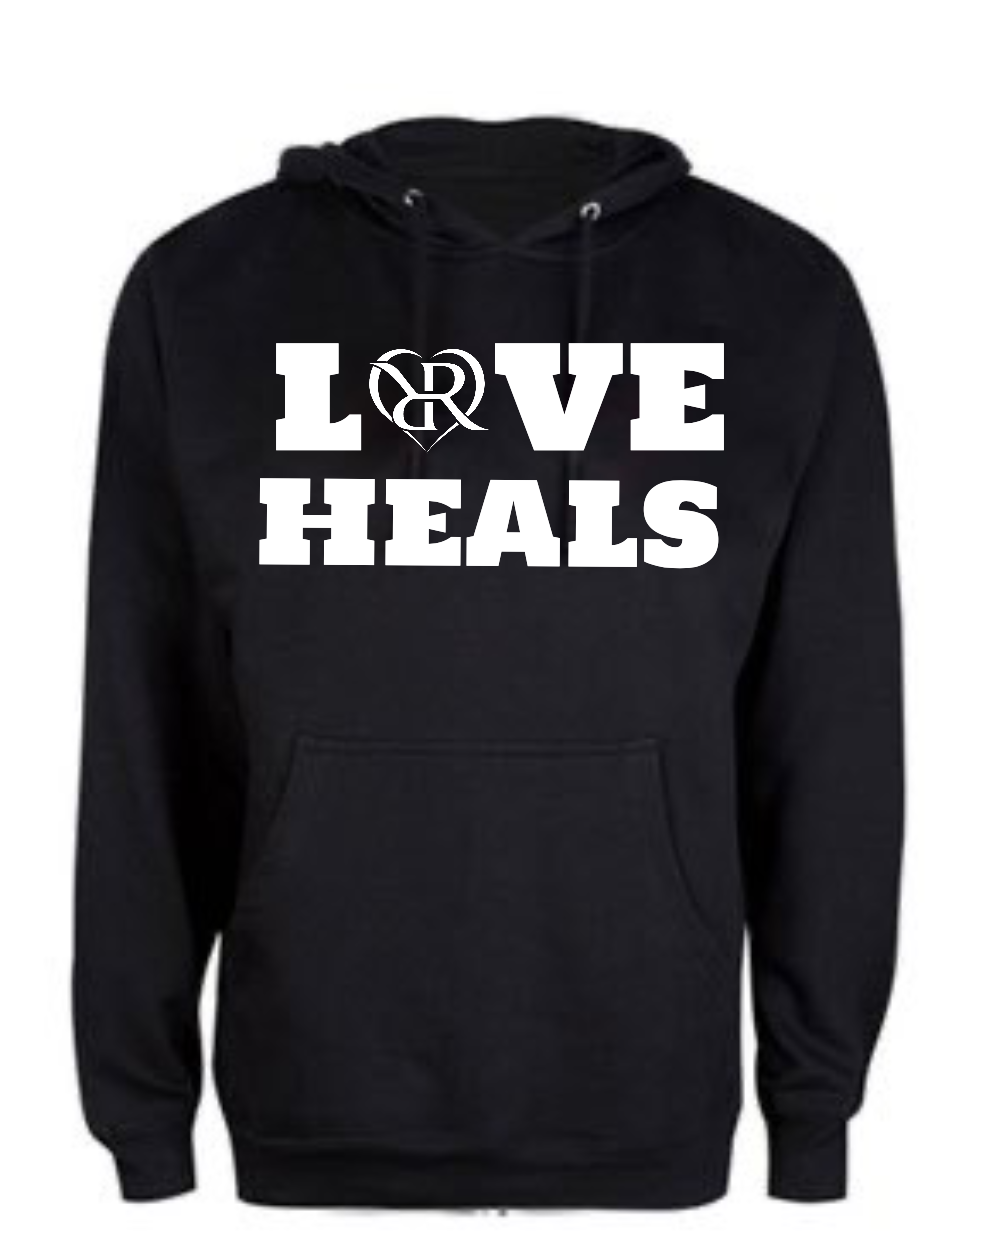 "Love Heals" Hoodie